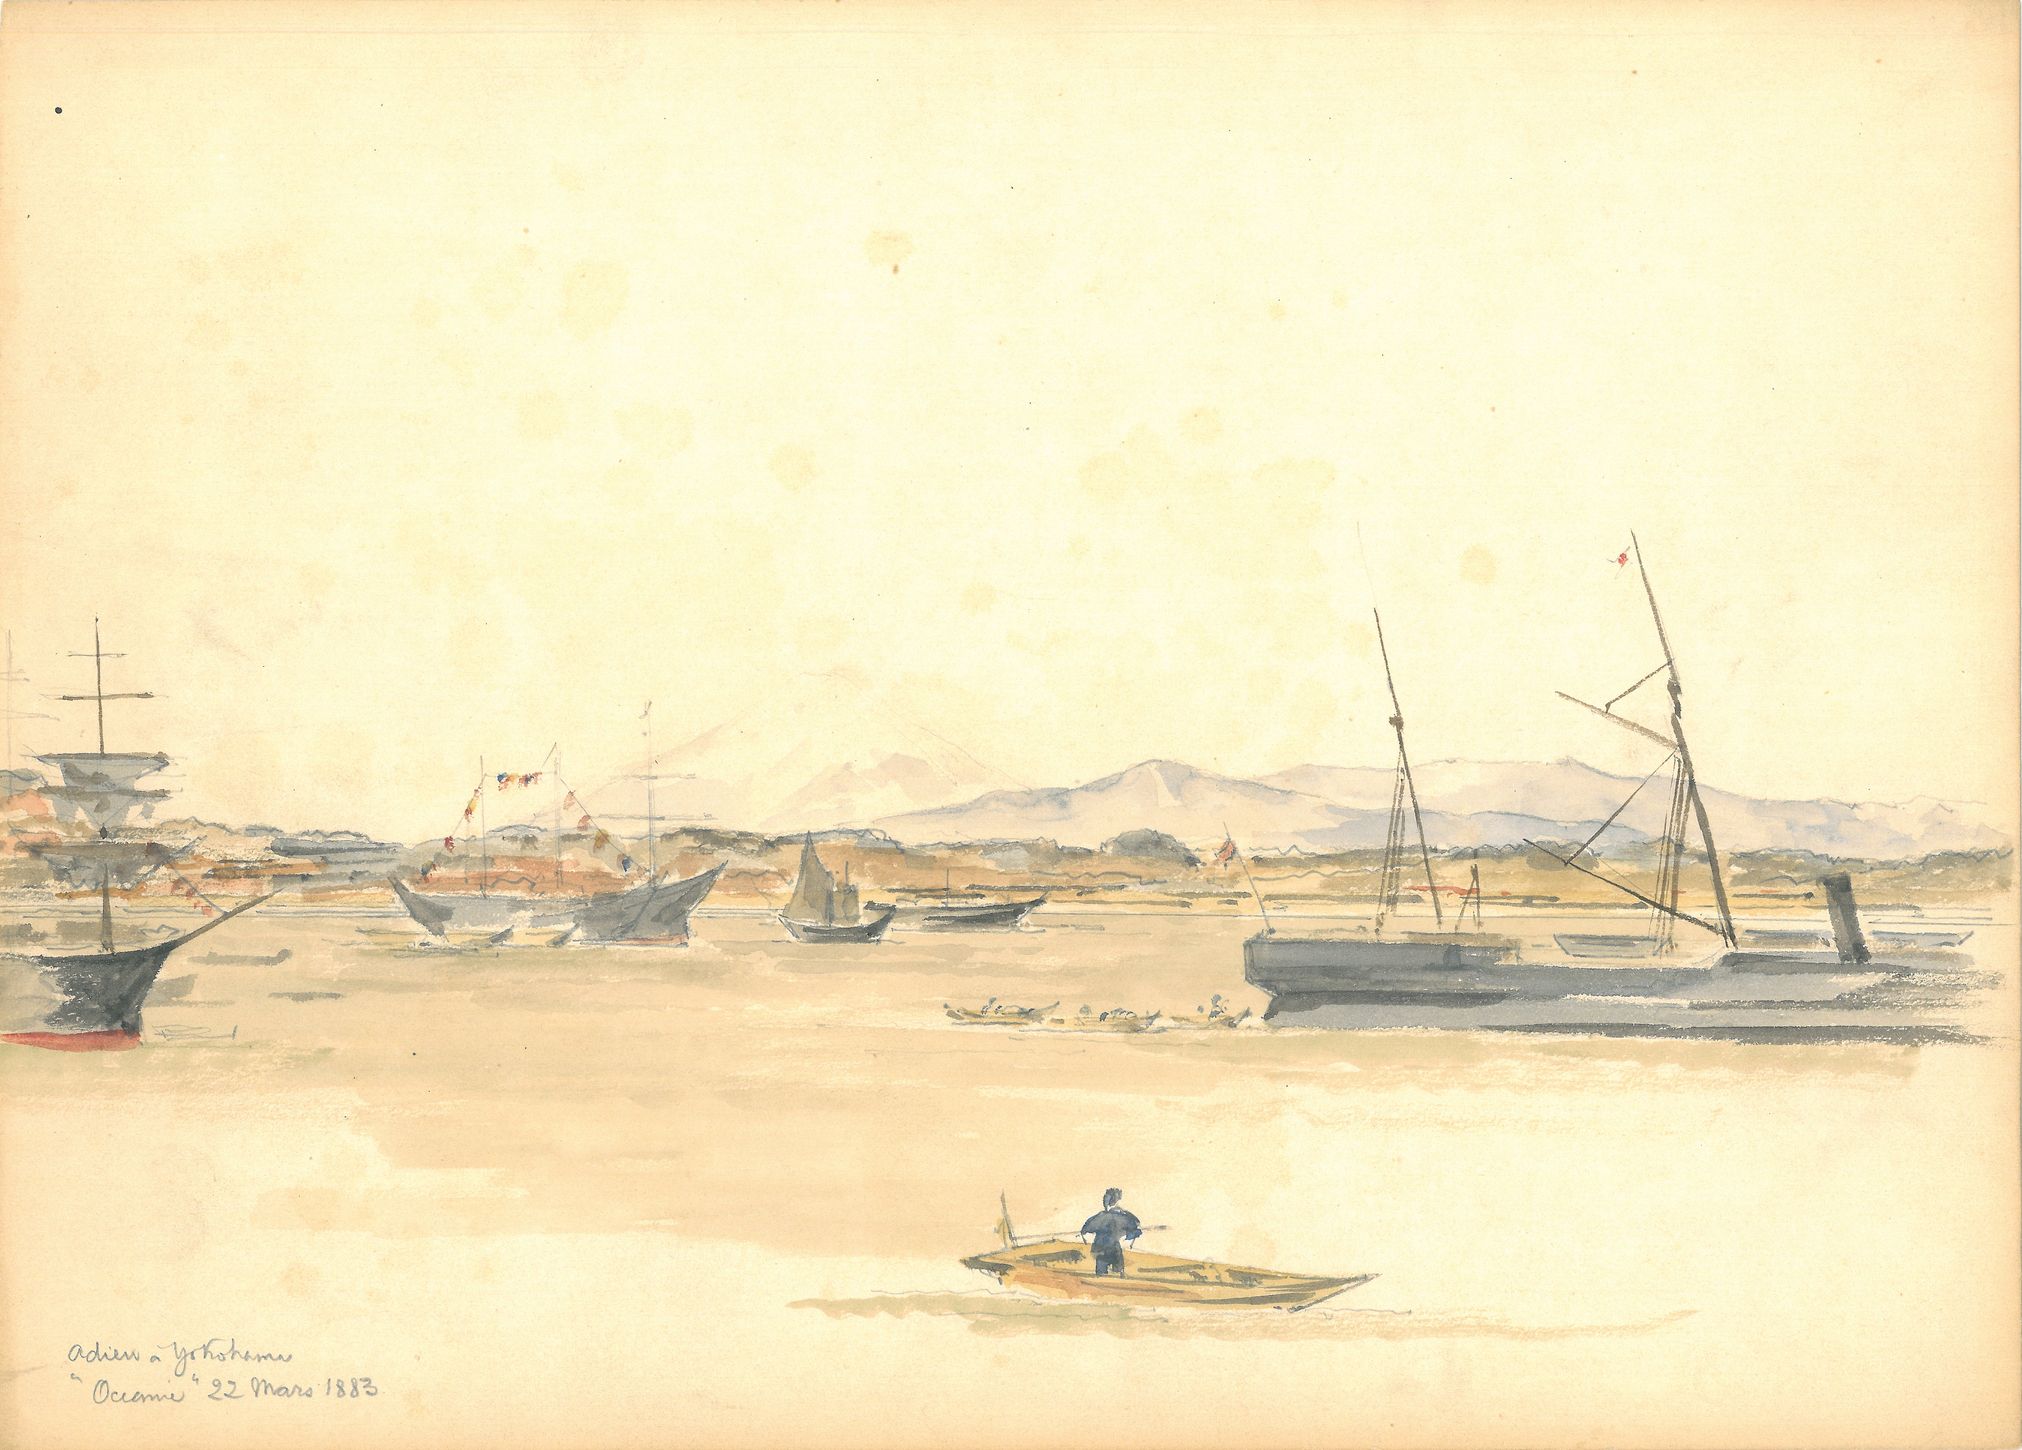 Hugues KRAFFT, Adieu à Yokohama, 22 mars 1883, aquarelle et crayon graphite, collection SAVR / musée Le Vergeur, 2009.0.340.